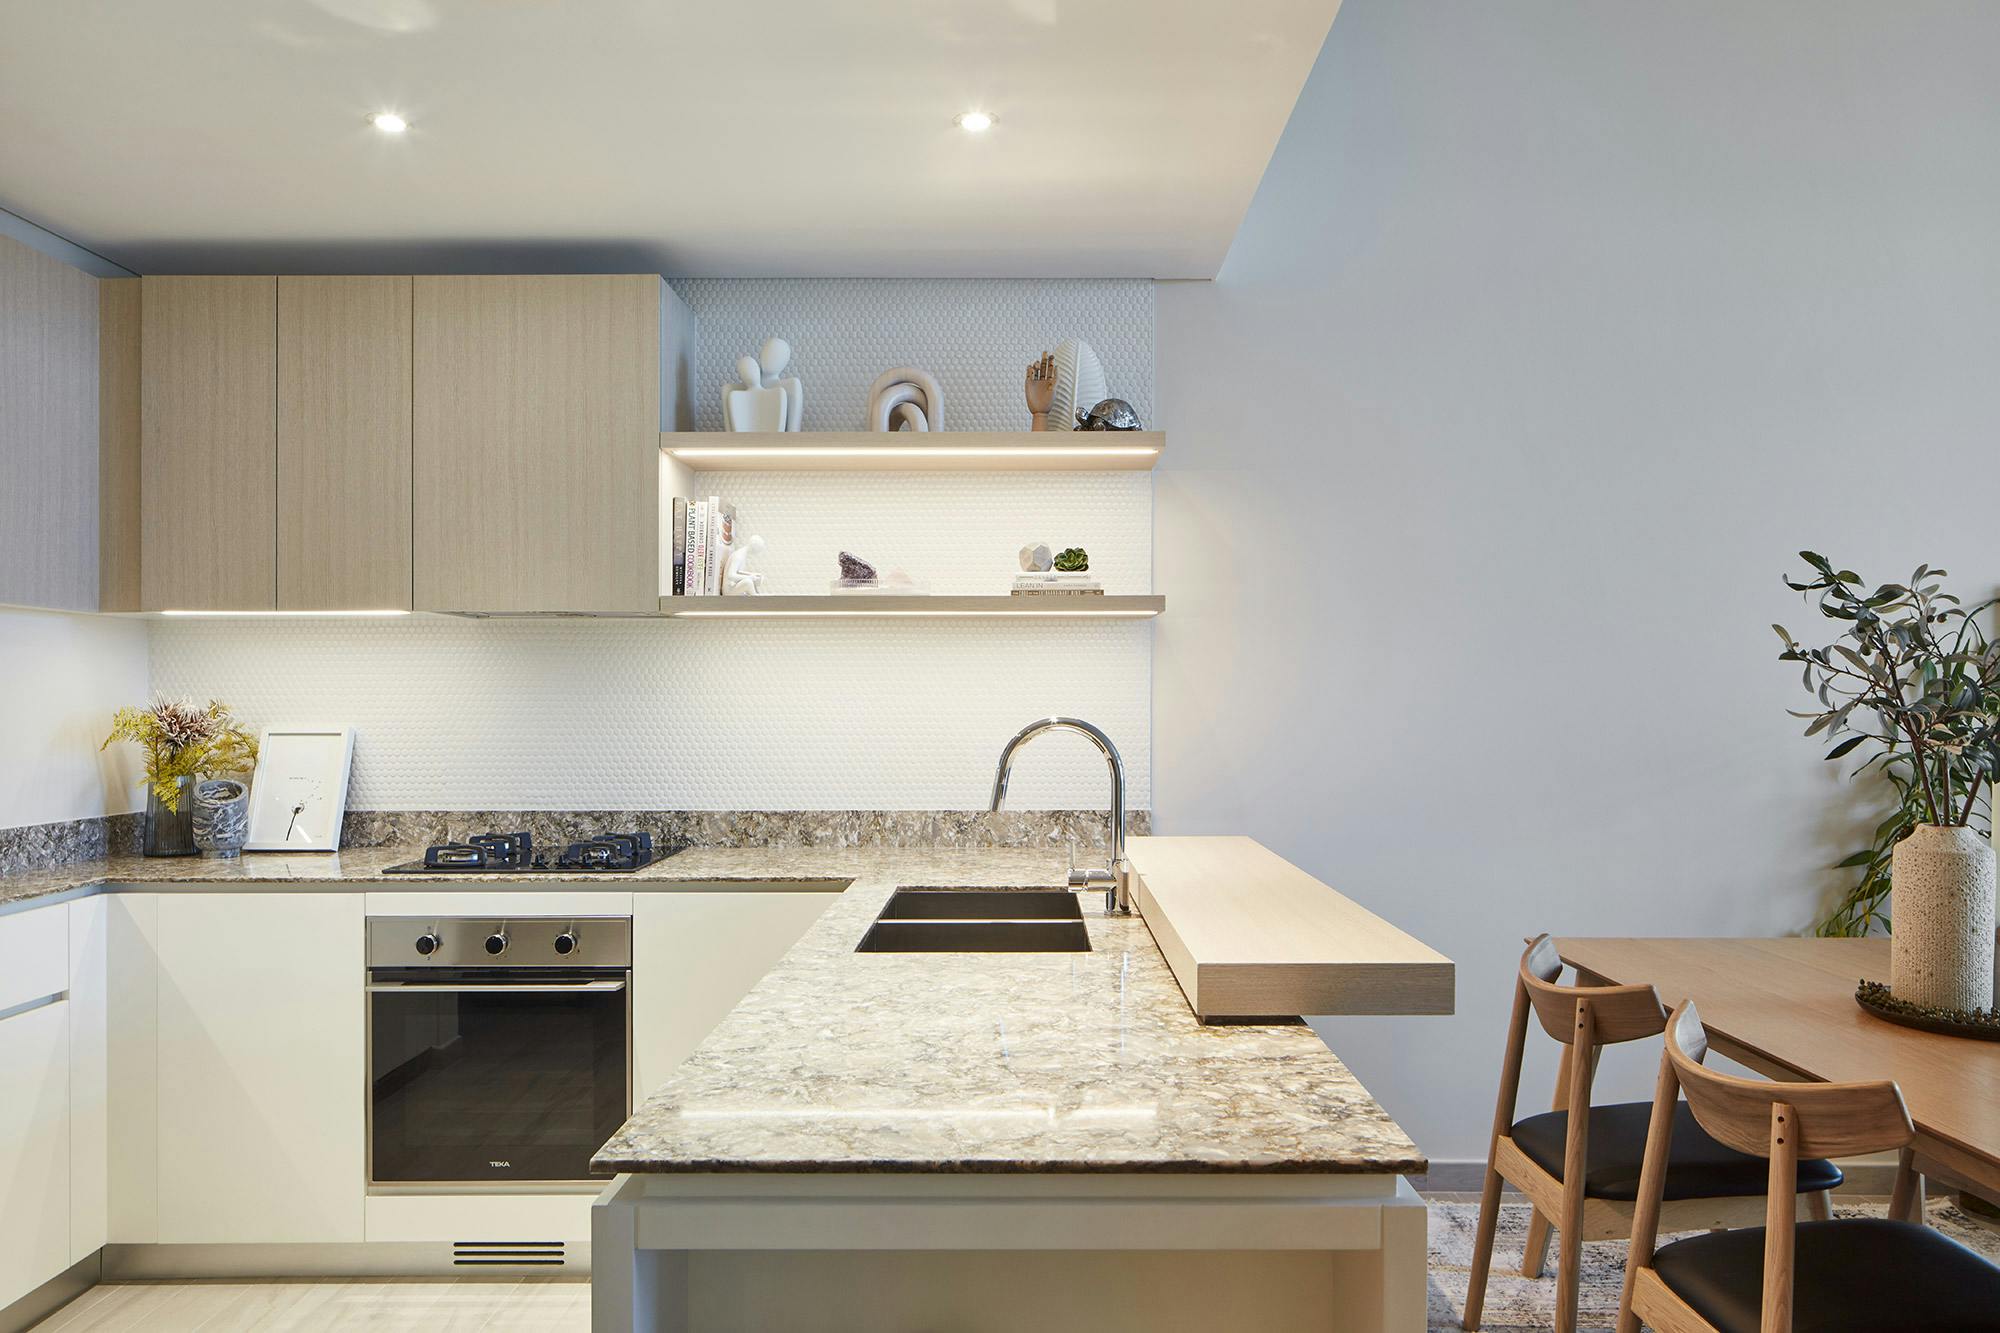 Bildnummer 34 des aktuellen Abschnitts von DKTN Sirius adds a welcoming touch to the kitchens of a residential development in Dubai von Cosentino Deutschland